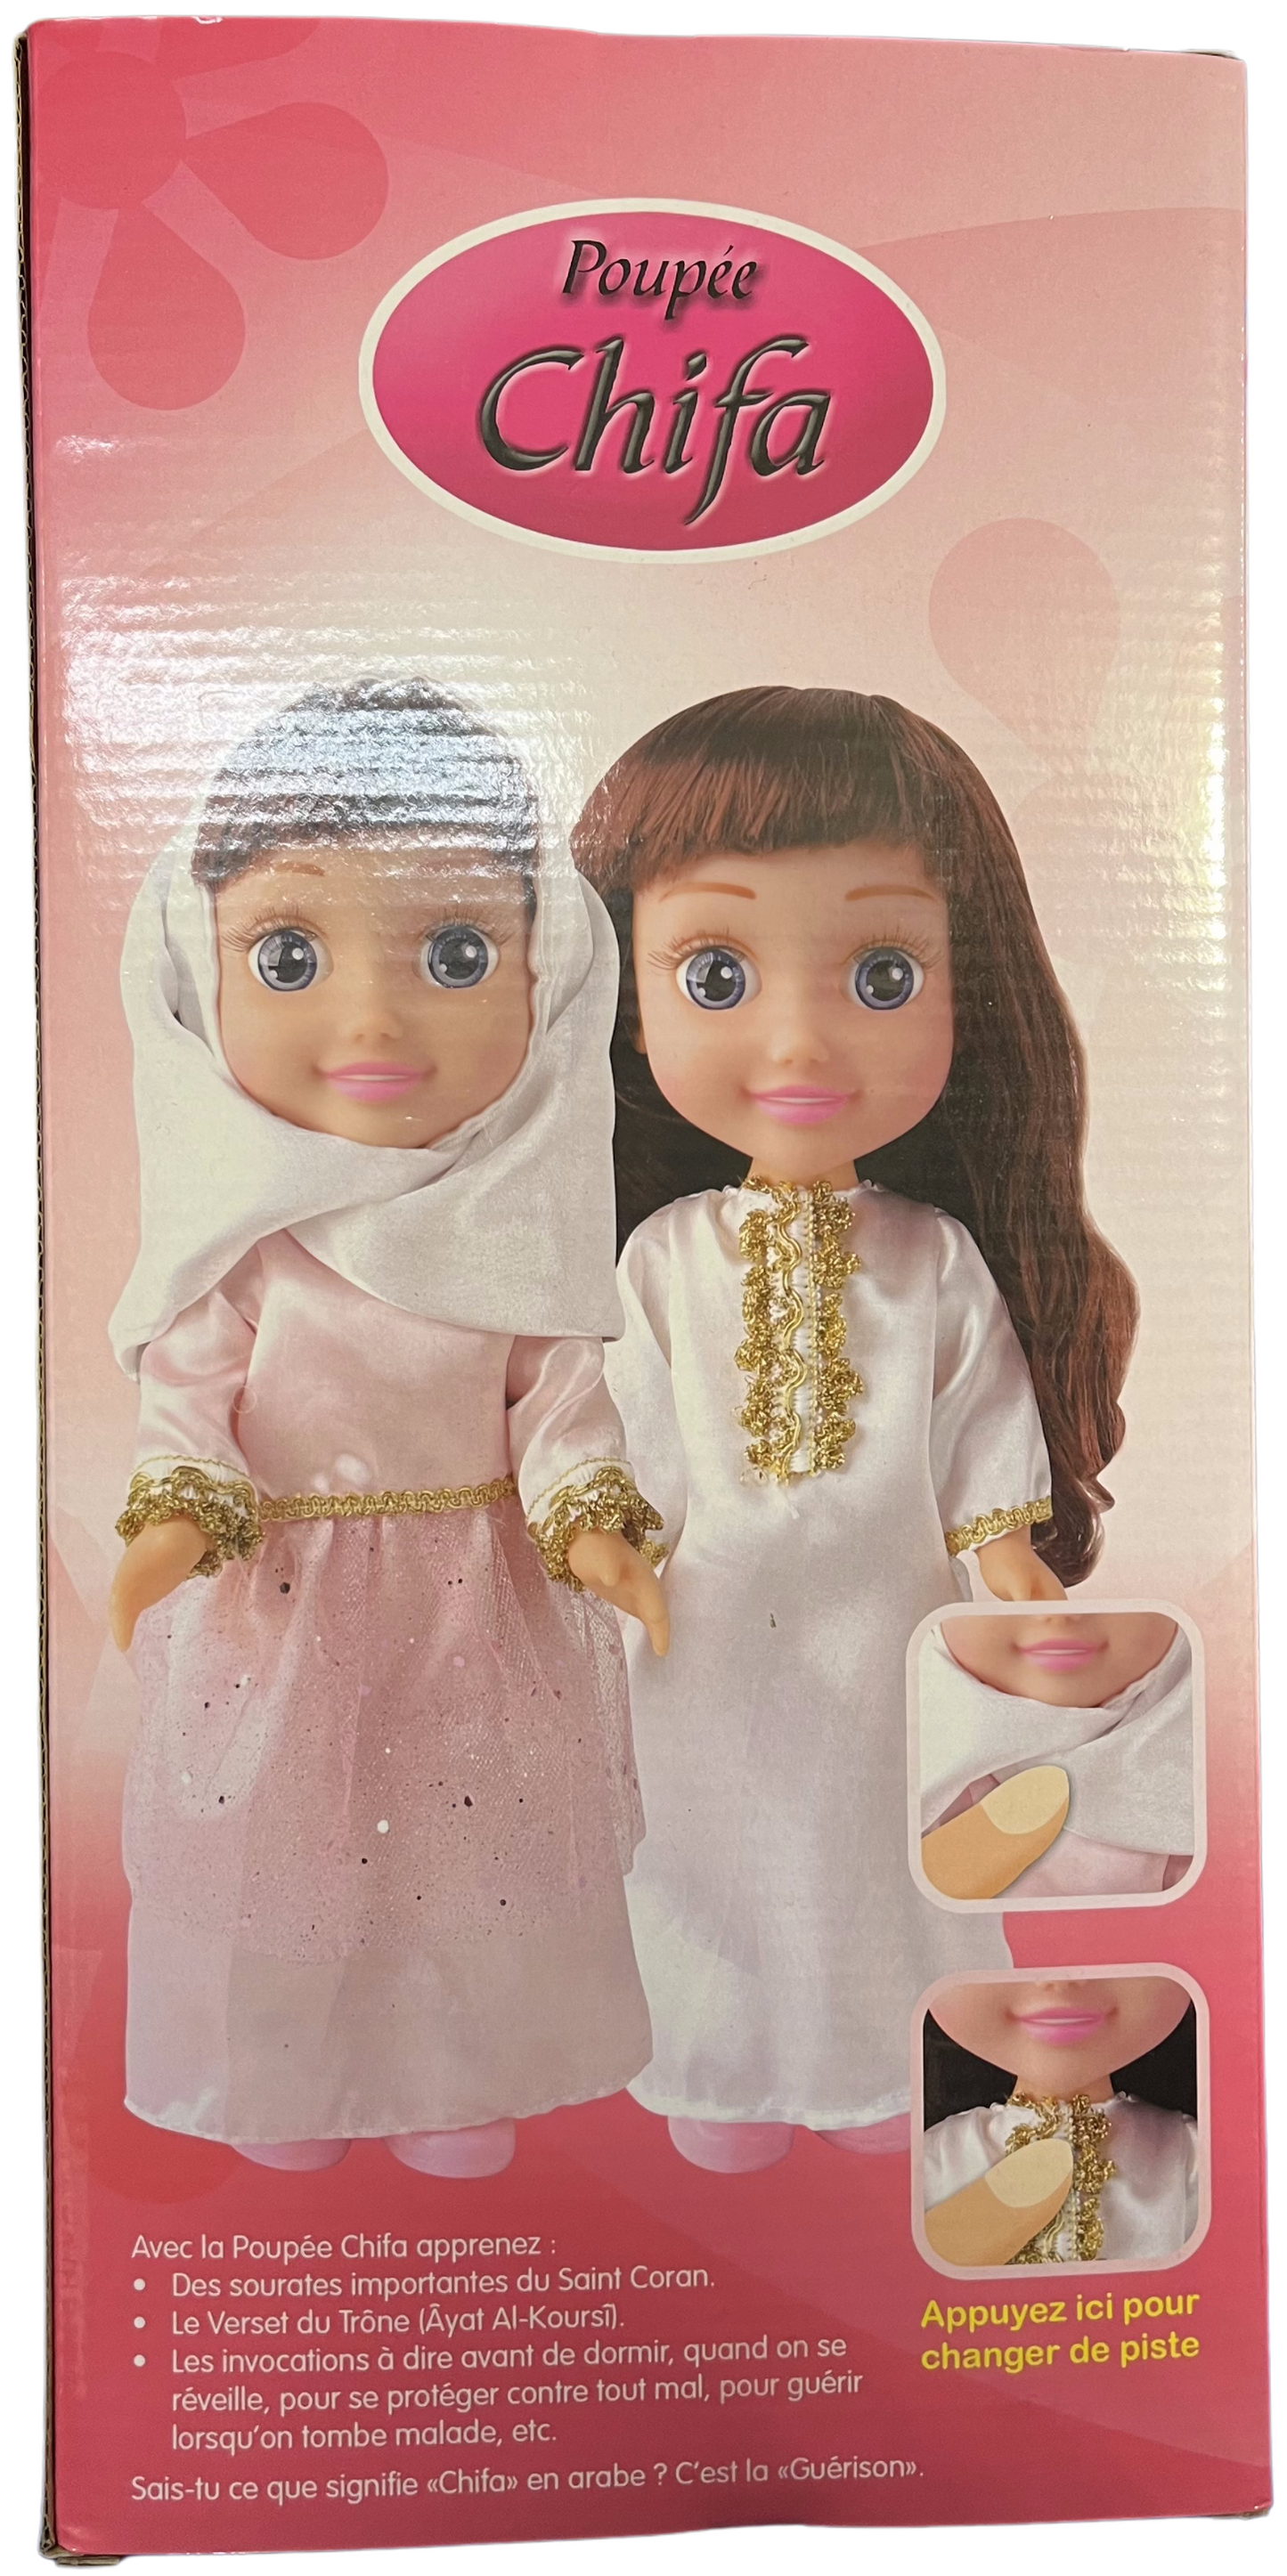 Poupée musulmane "Chifa" parlante (version de luxe) - 2 couleurs disponibles